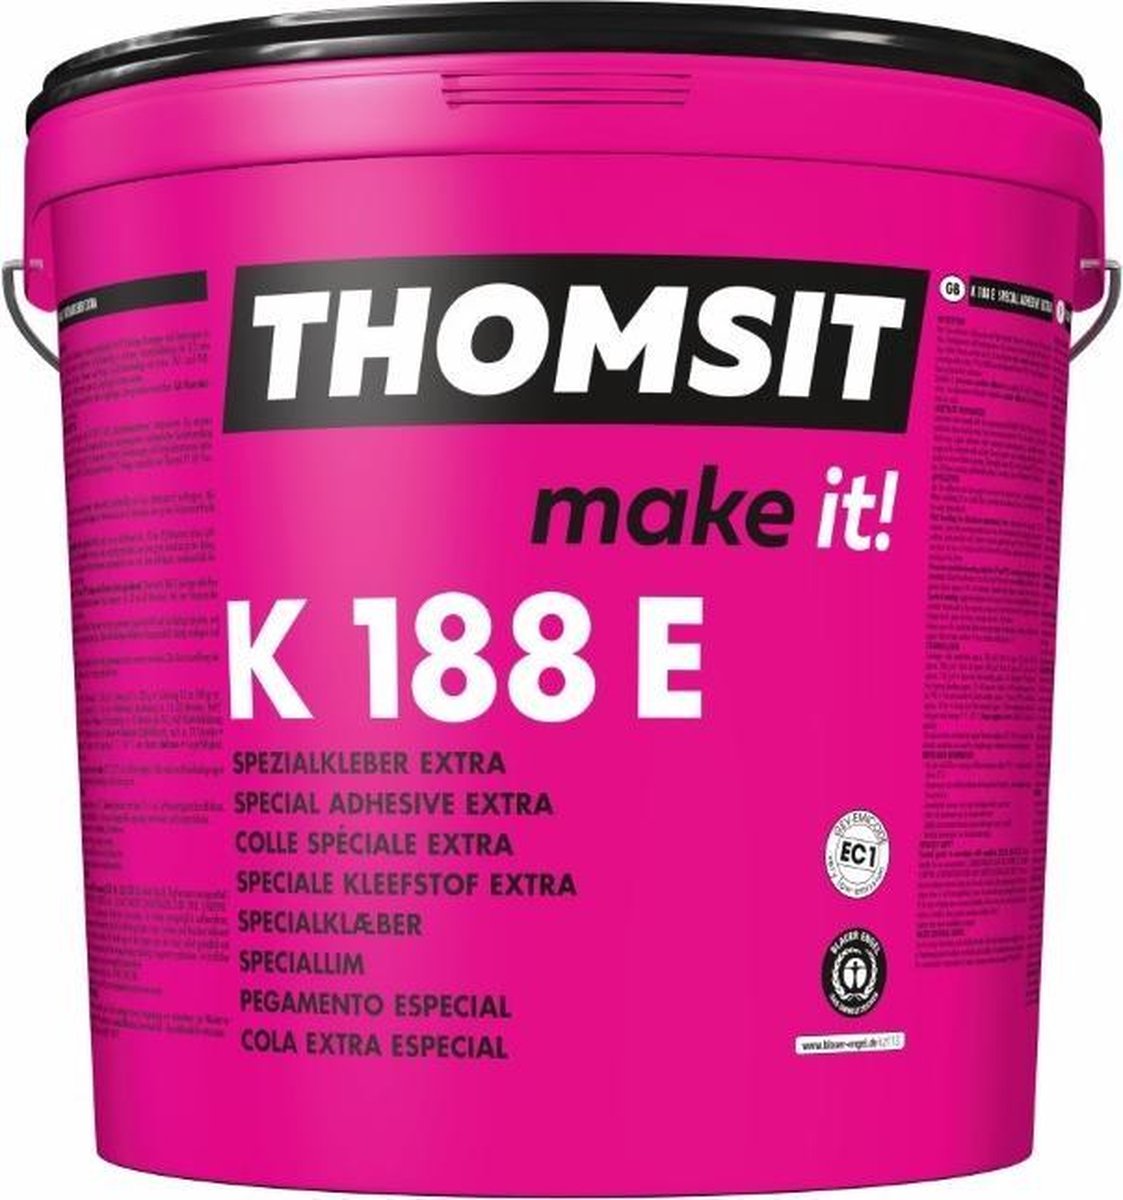 PVC lijm vloer - Thomsit - K188 E - Aquaplast - Dryback pvc verlijmen - Kant&klaar - 13 kg per emmer